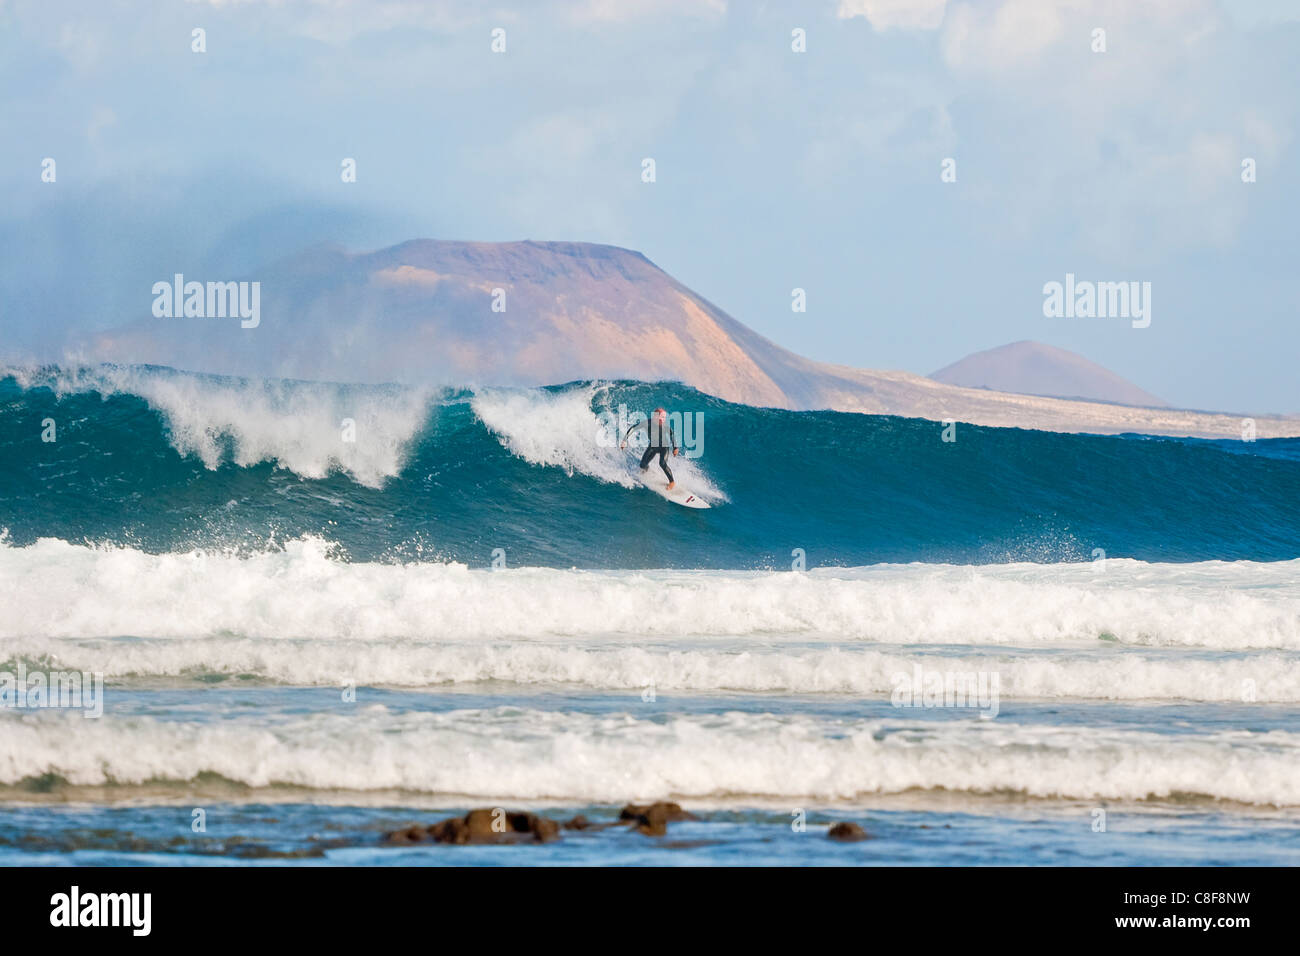 Surfer auf der Welle, Graciosa Insel hinaus Welt Klasse Surf Reefbreaks bekannt als San Juan, Famara, Lanzarote, Kanarische Inseln, Spanien Stockfoto